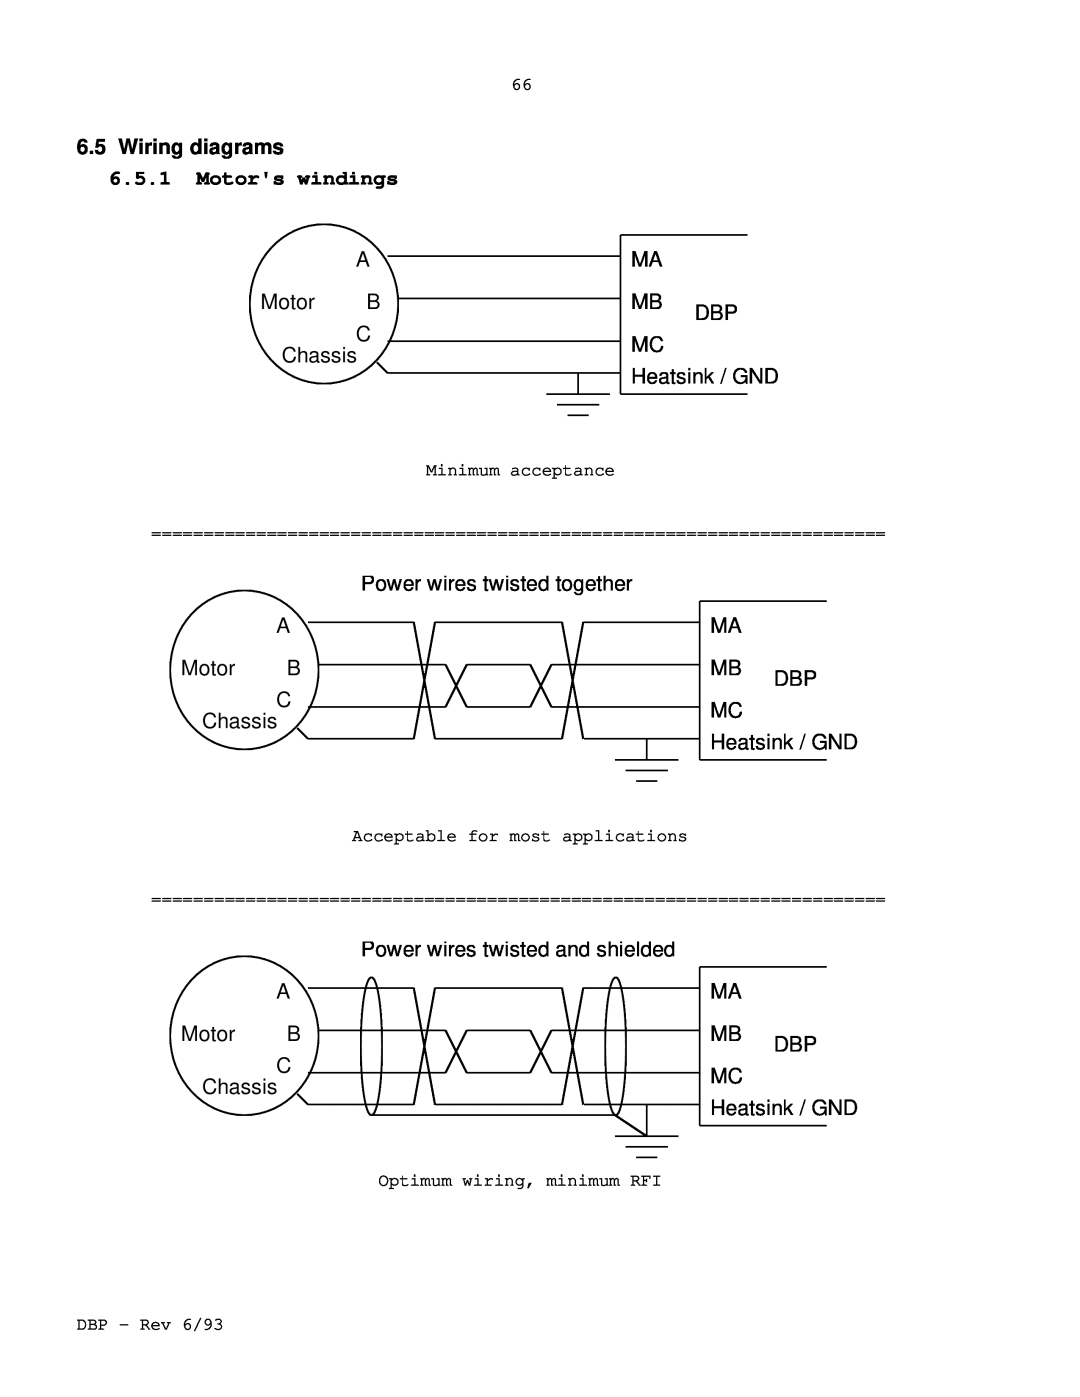 Elmo DBP SERIES manual 6.5Wiring diagrams, 6.5.1Motors windings 